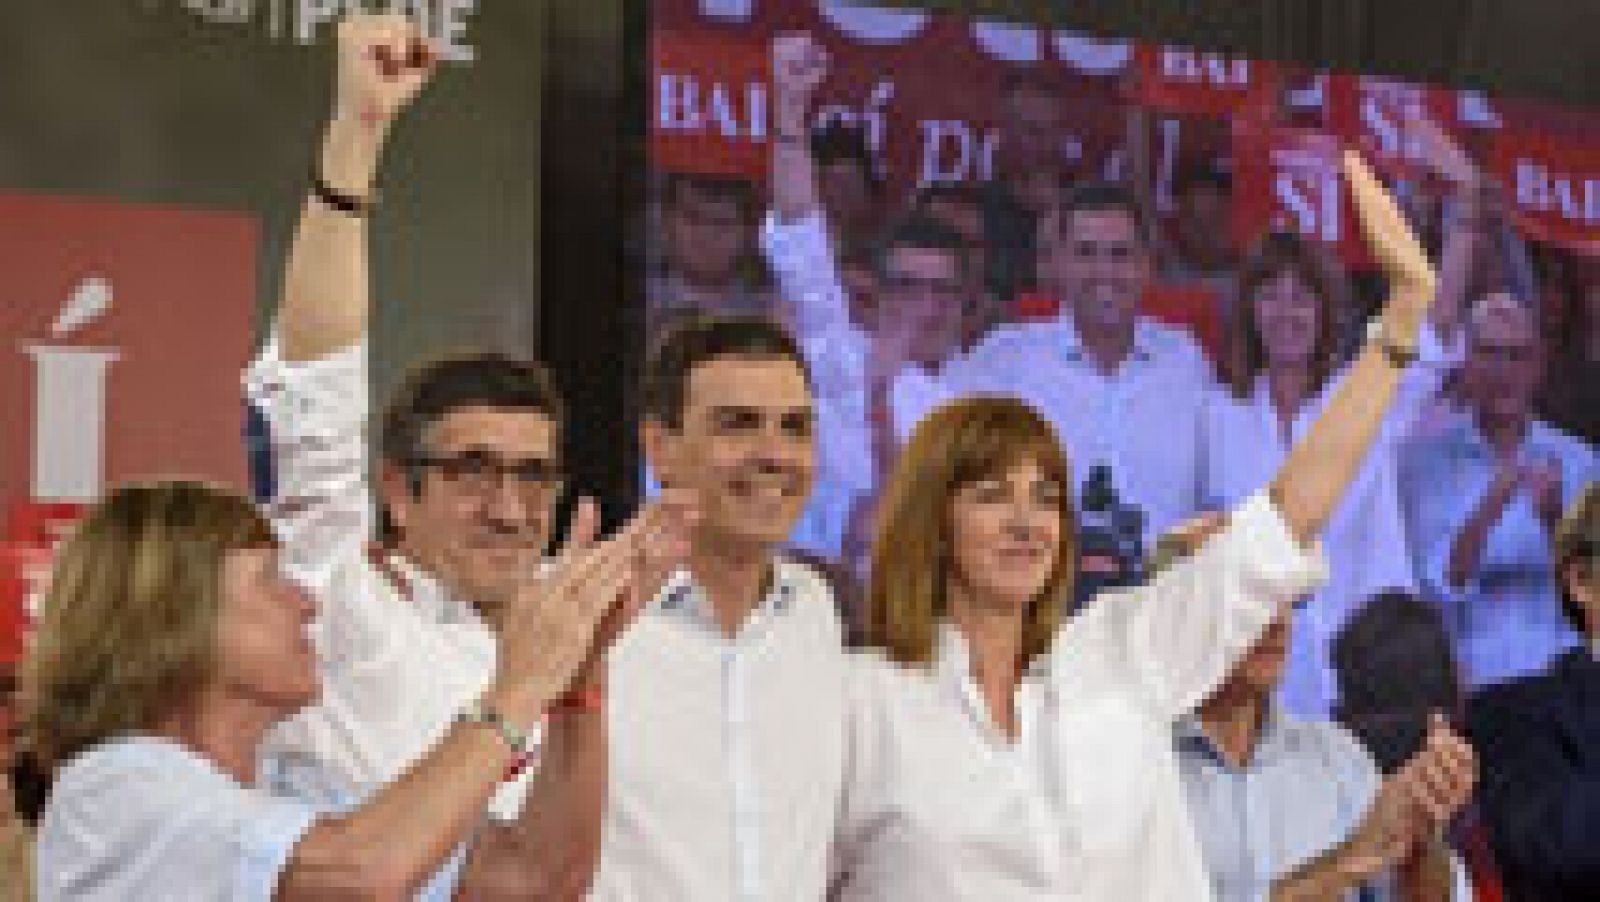 El PSOE llama a los socialistas a votar "en masa" para poder ser presidente del Gobierno esta vez